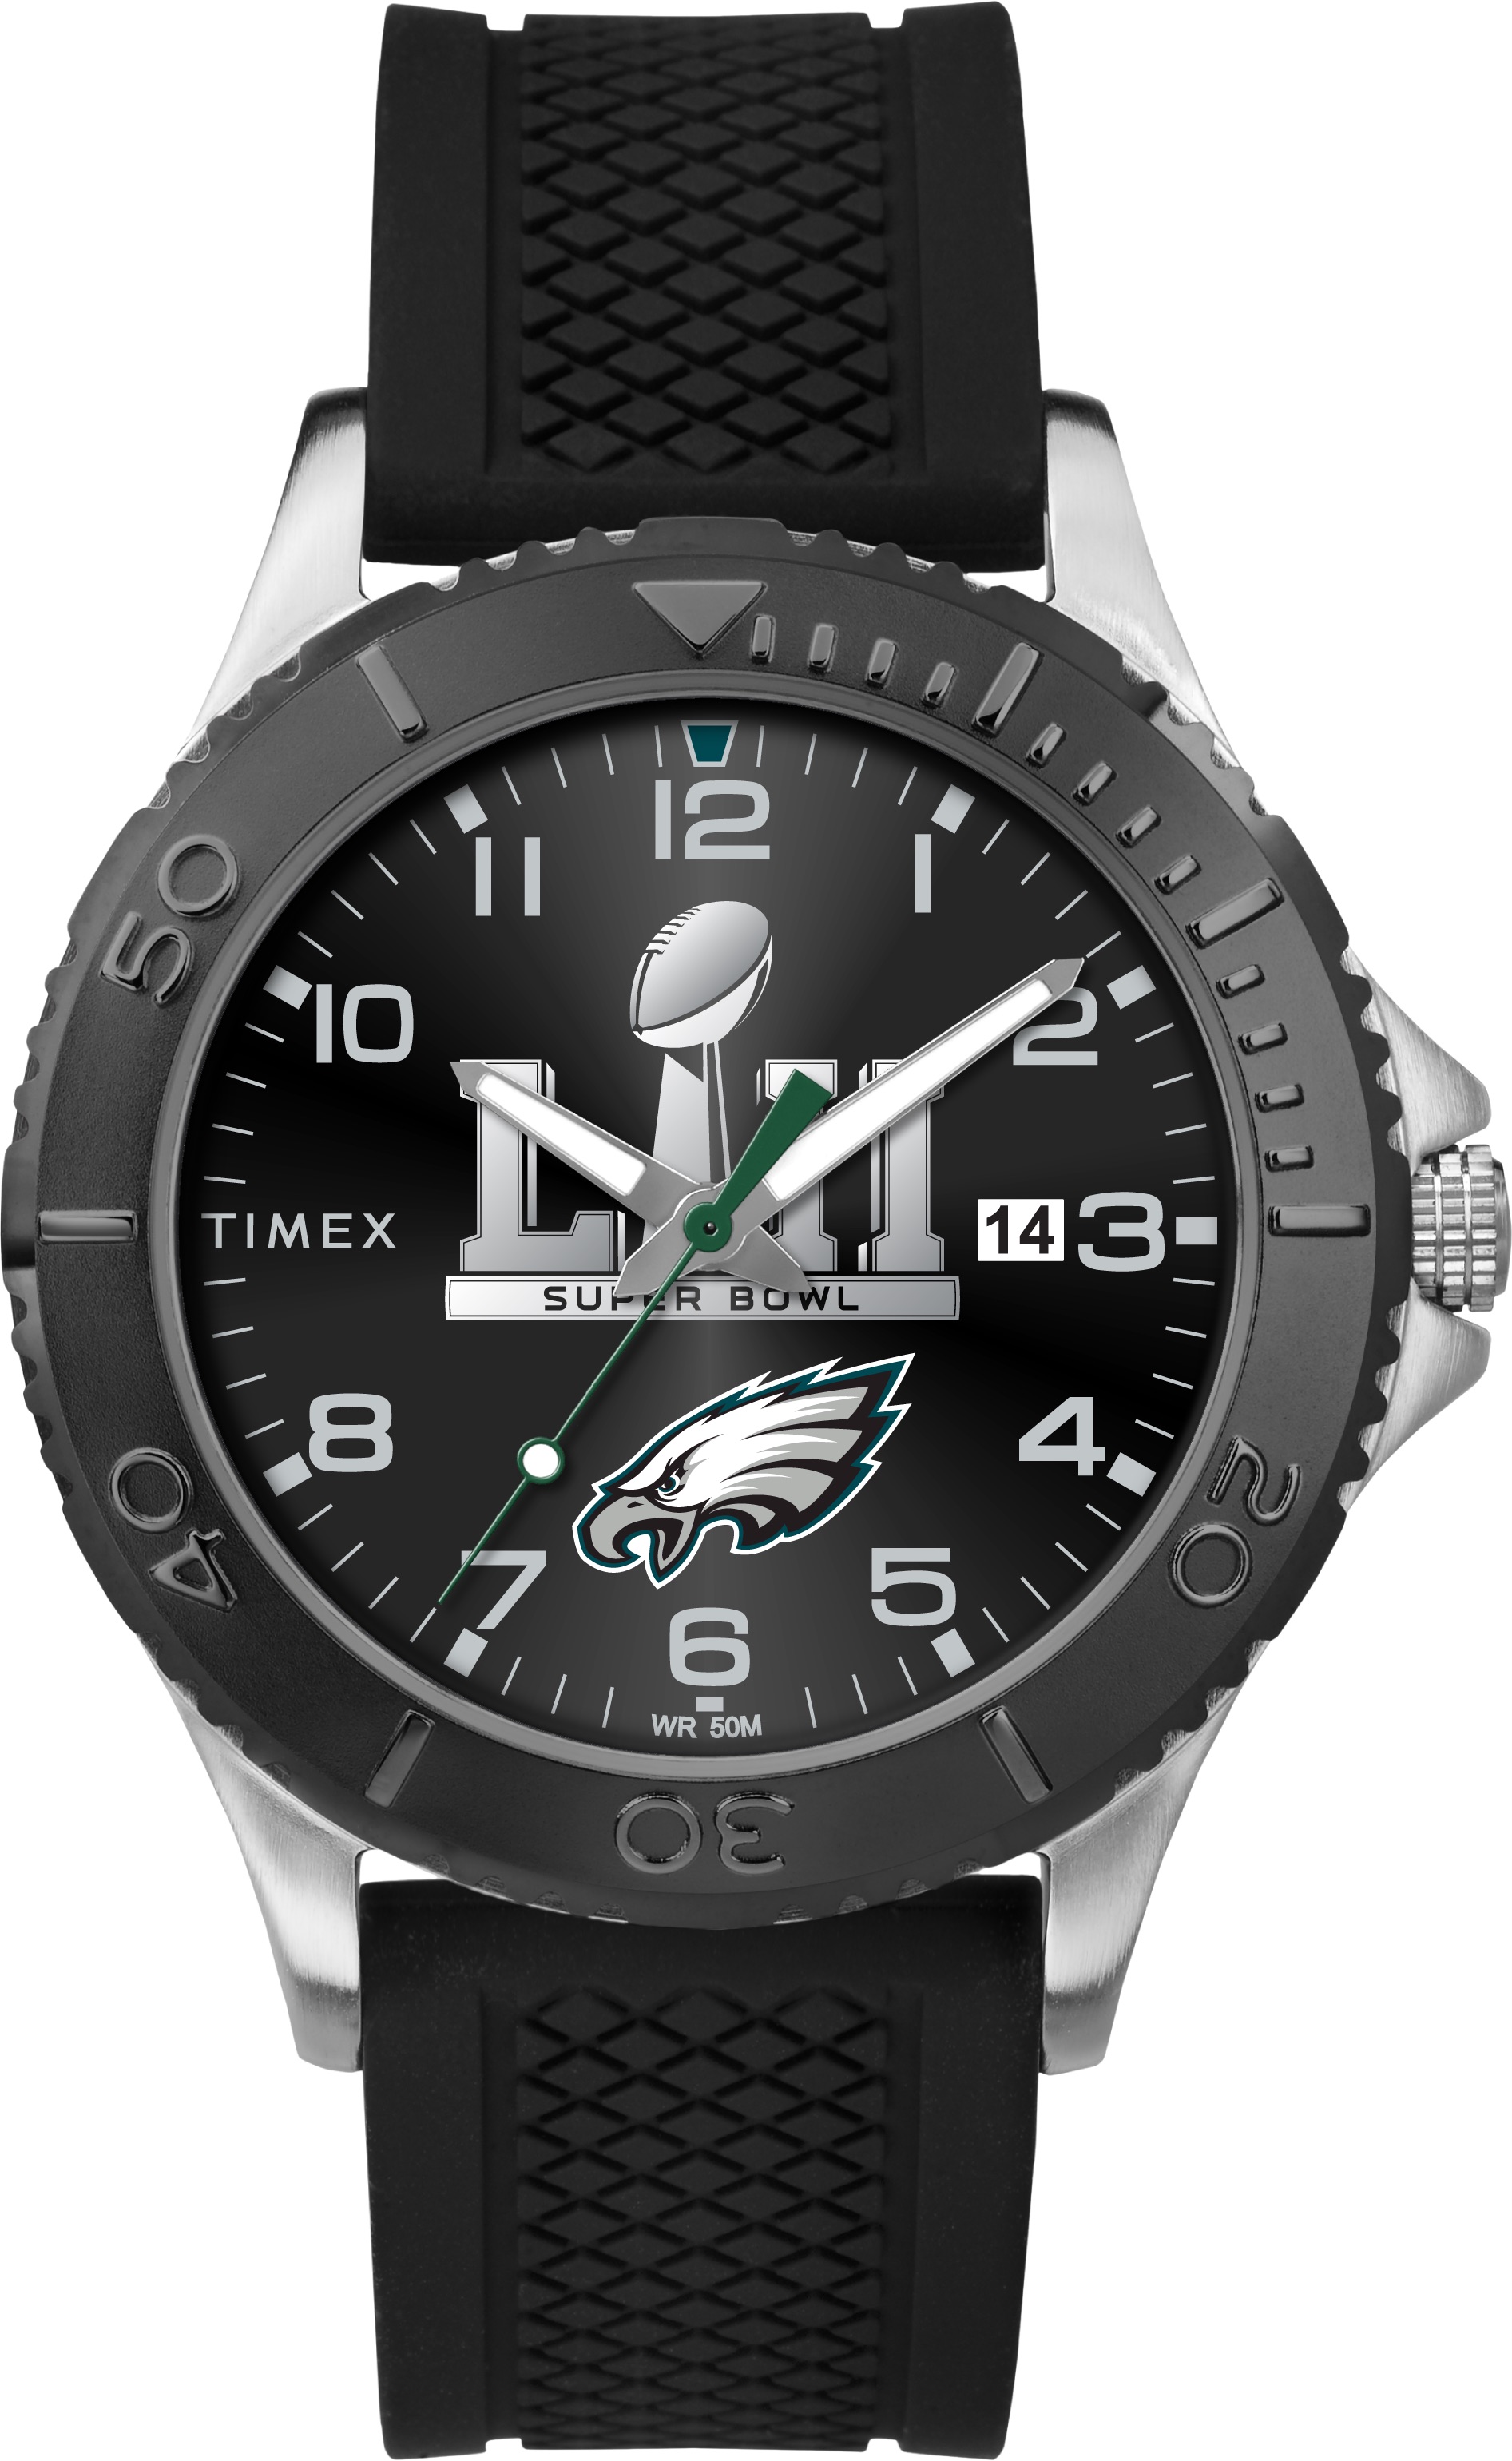 Timex-Eagles-Super-Bowl-watch.jpg